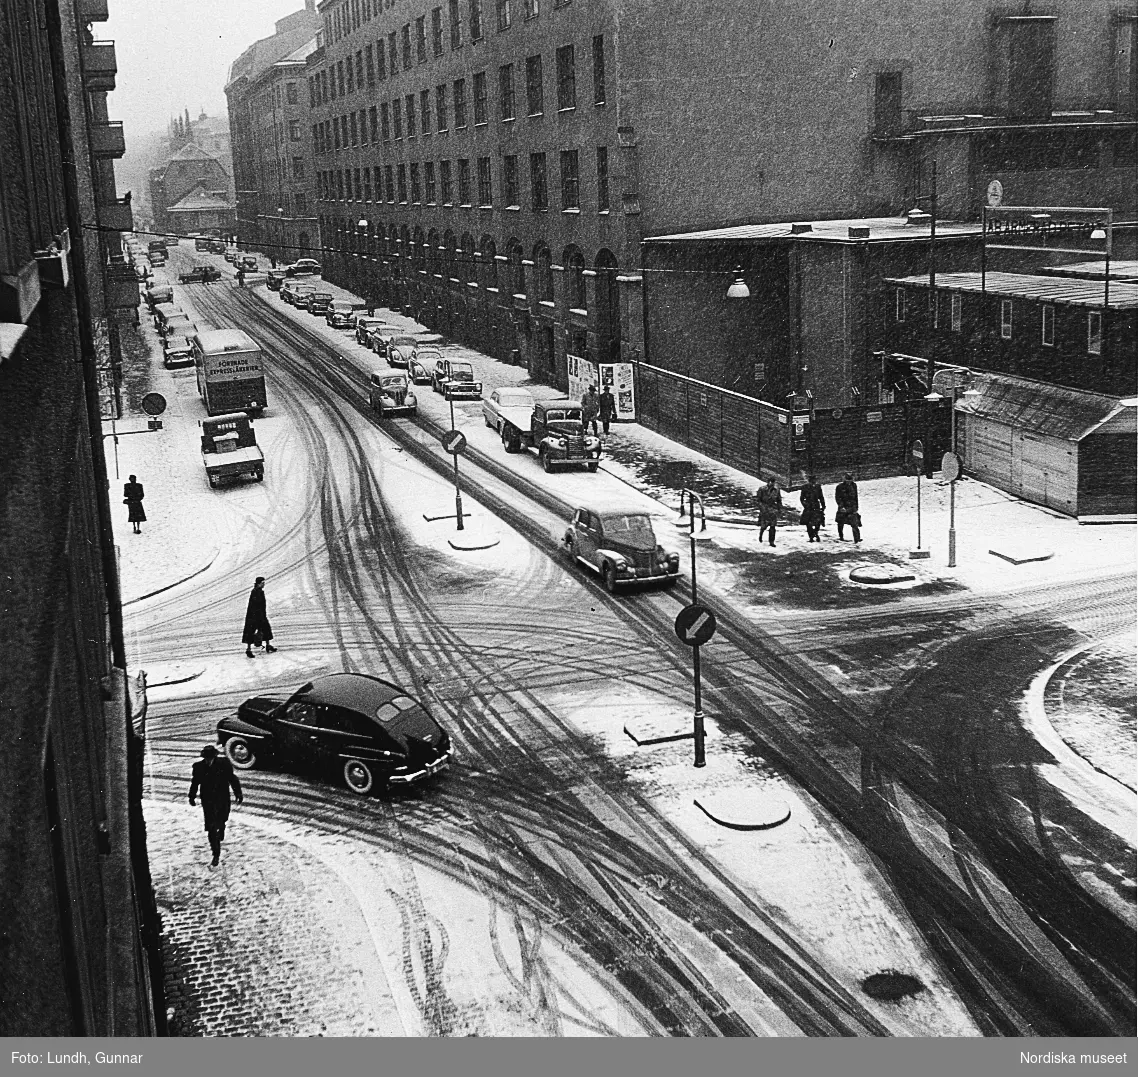 Utsikt från fotograf Gunnar Lundhs hem, Döbelnsgatan, Stockholm år 1955. Marken är snötäckt. Bilar och fotgängare på gatan.